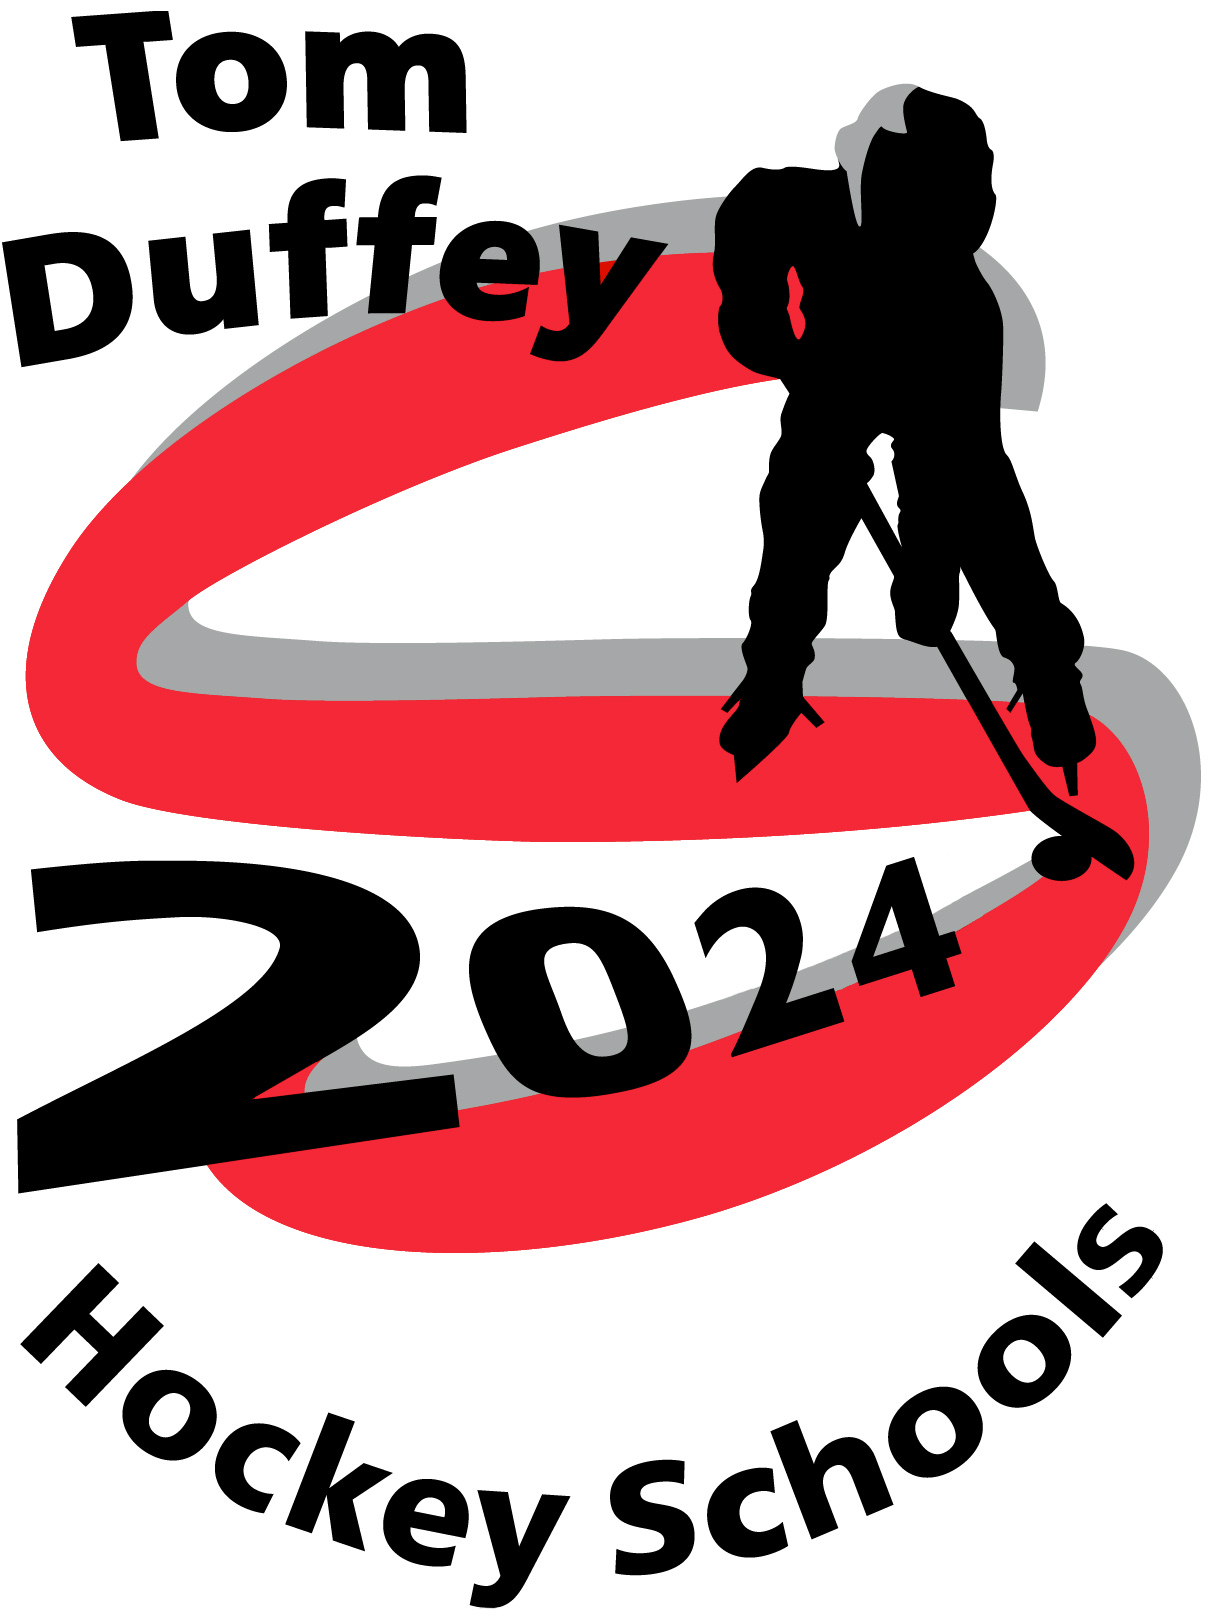 Duffey Hockey School logo